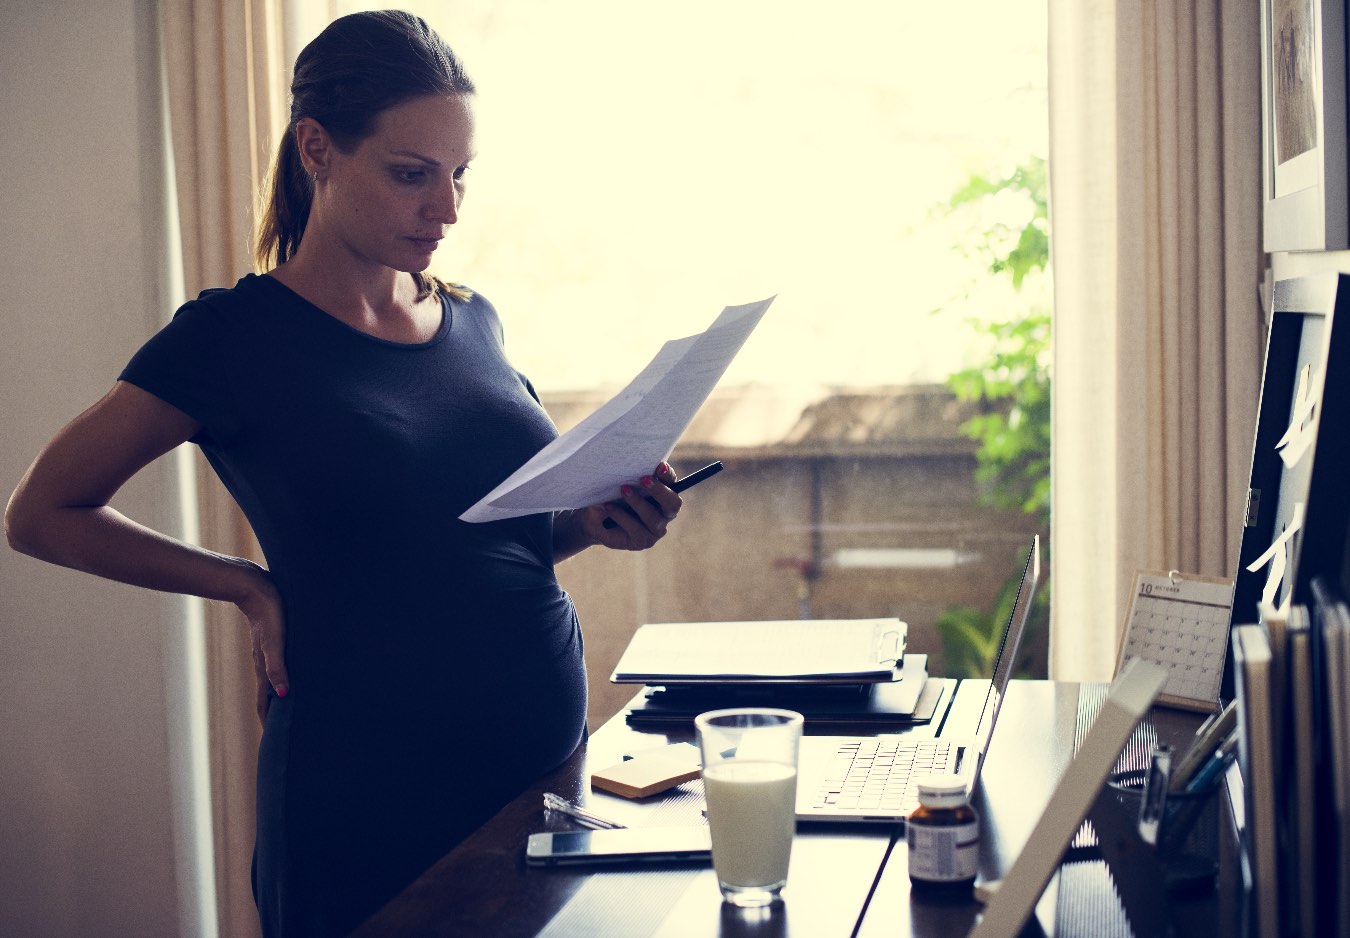 Obowiązkowy rejestr ciąż – od kiedy? Kontrowersyjny przepis wchodzi w życie. Jakie niesie konsekwencje dla kobiet?